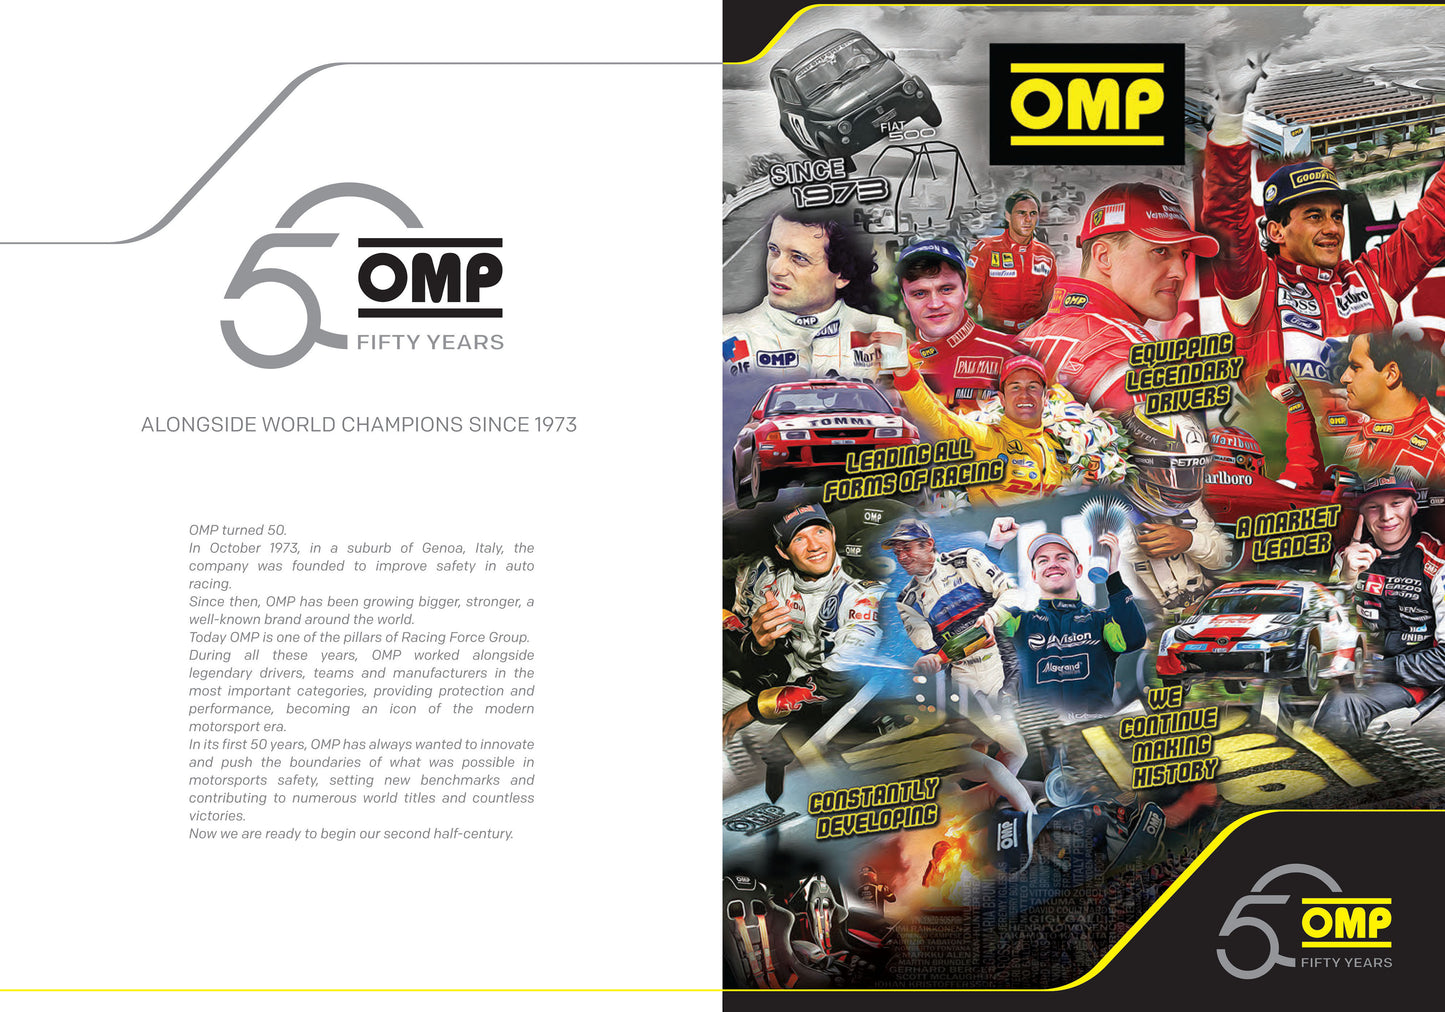 OD/1979/N OMP WRC STEERING WHEEL MID-DEPTH 350mm BLACK SUEDE LEATHER GENUINE OMP